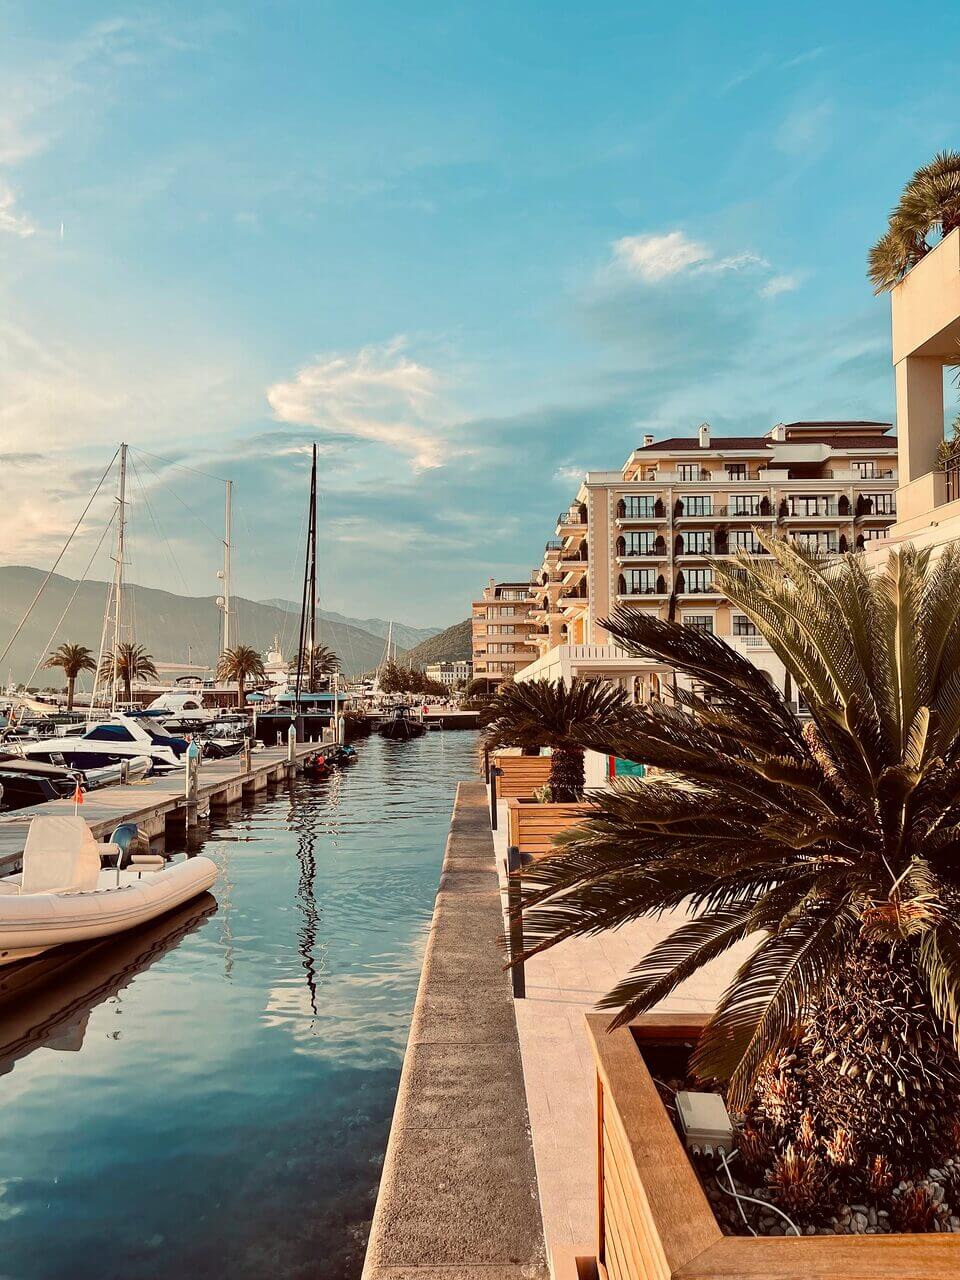 Ein ruhiger Yachthafen in Porto Montenegro mit Luxusyachten, die an einem Wasserweg ankern, der von einem Gehweg mit tropischen Palmen gesäumt ist. Moderne Apartmentgebäude überblicken die Umgebung, mit Bergen und einem klaren Himmel im Hintergrund.